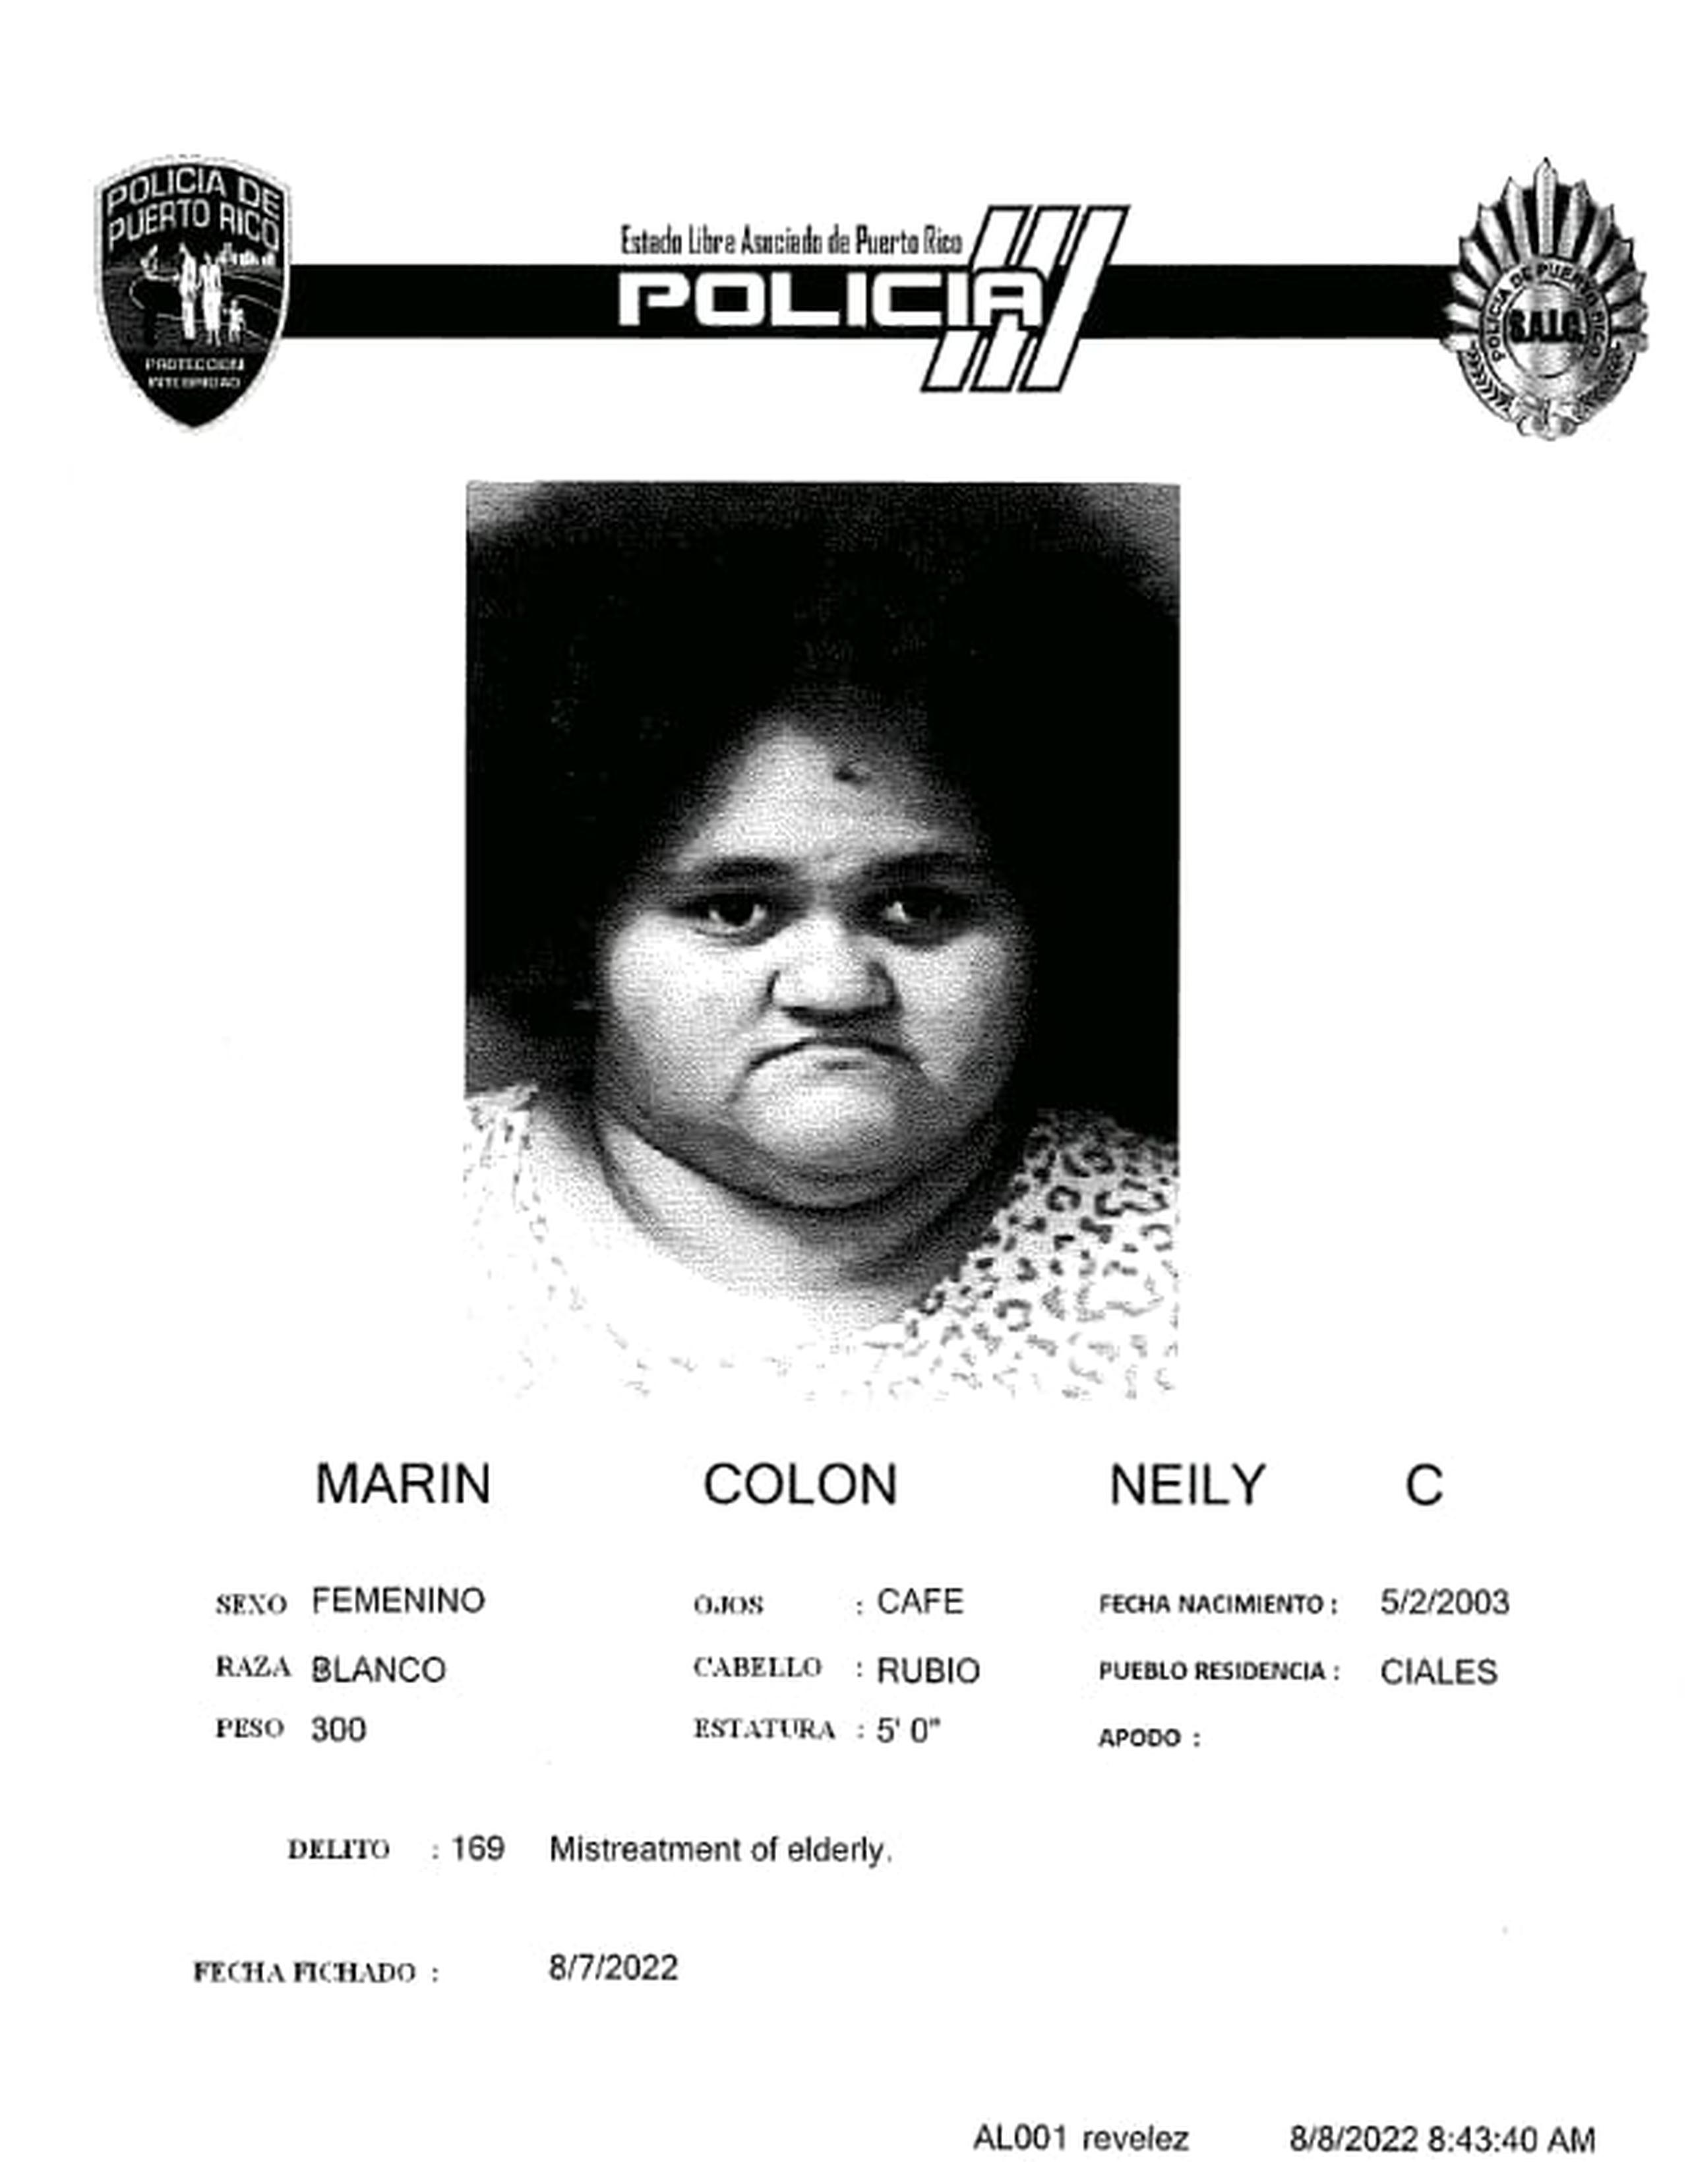 Neily C. Marín Colón fue acusada por maltratar a su abuela de 69 años, según el Negociado de la Policía.